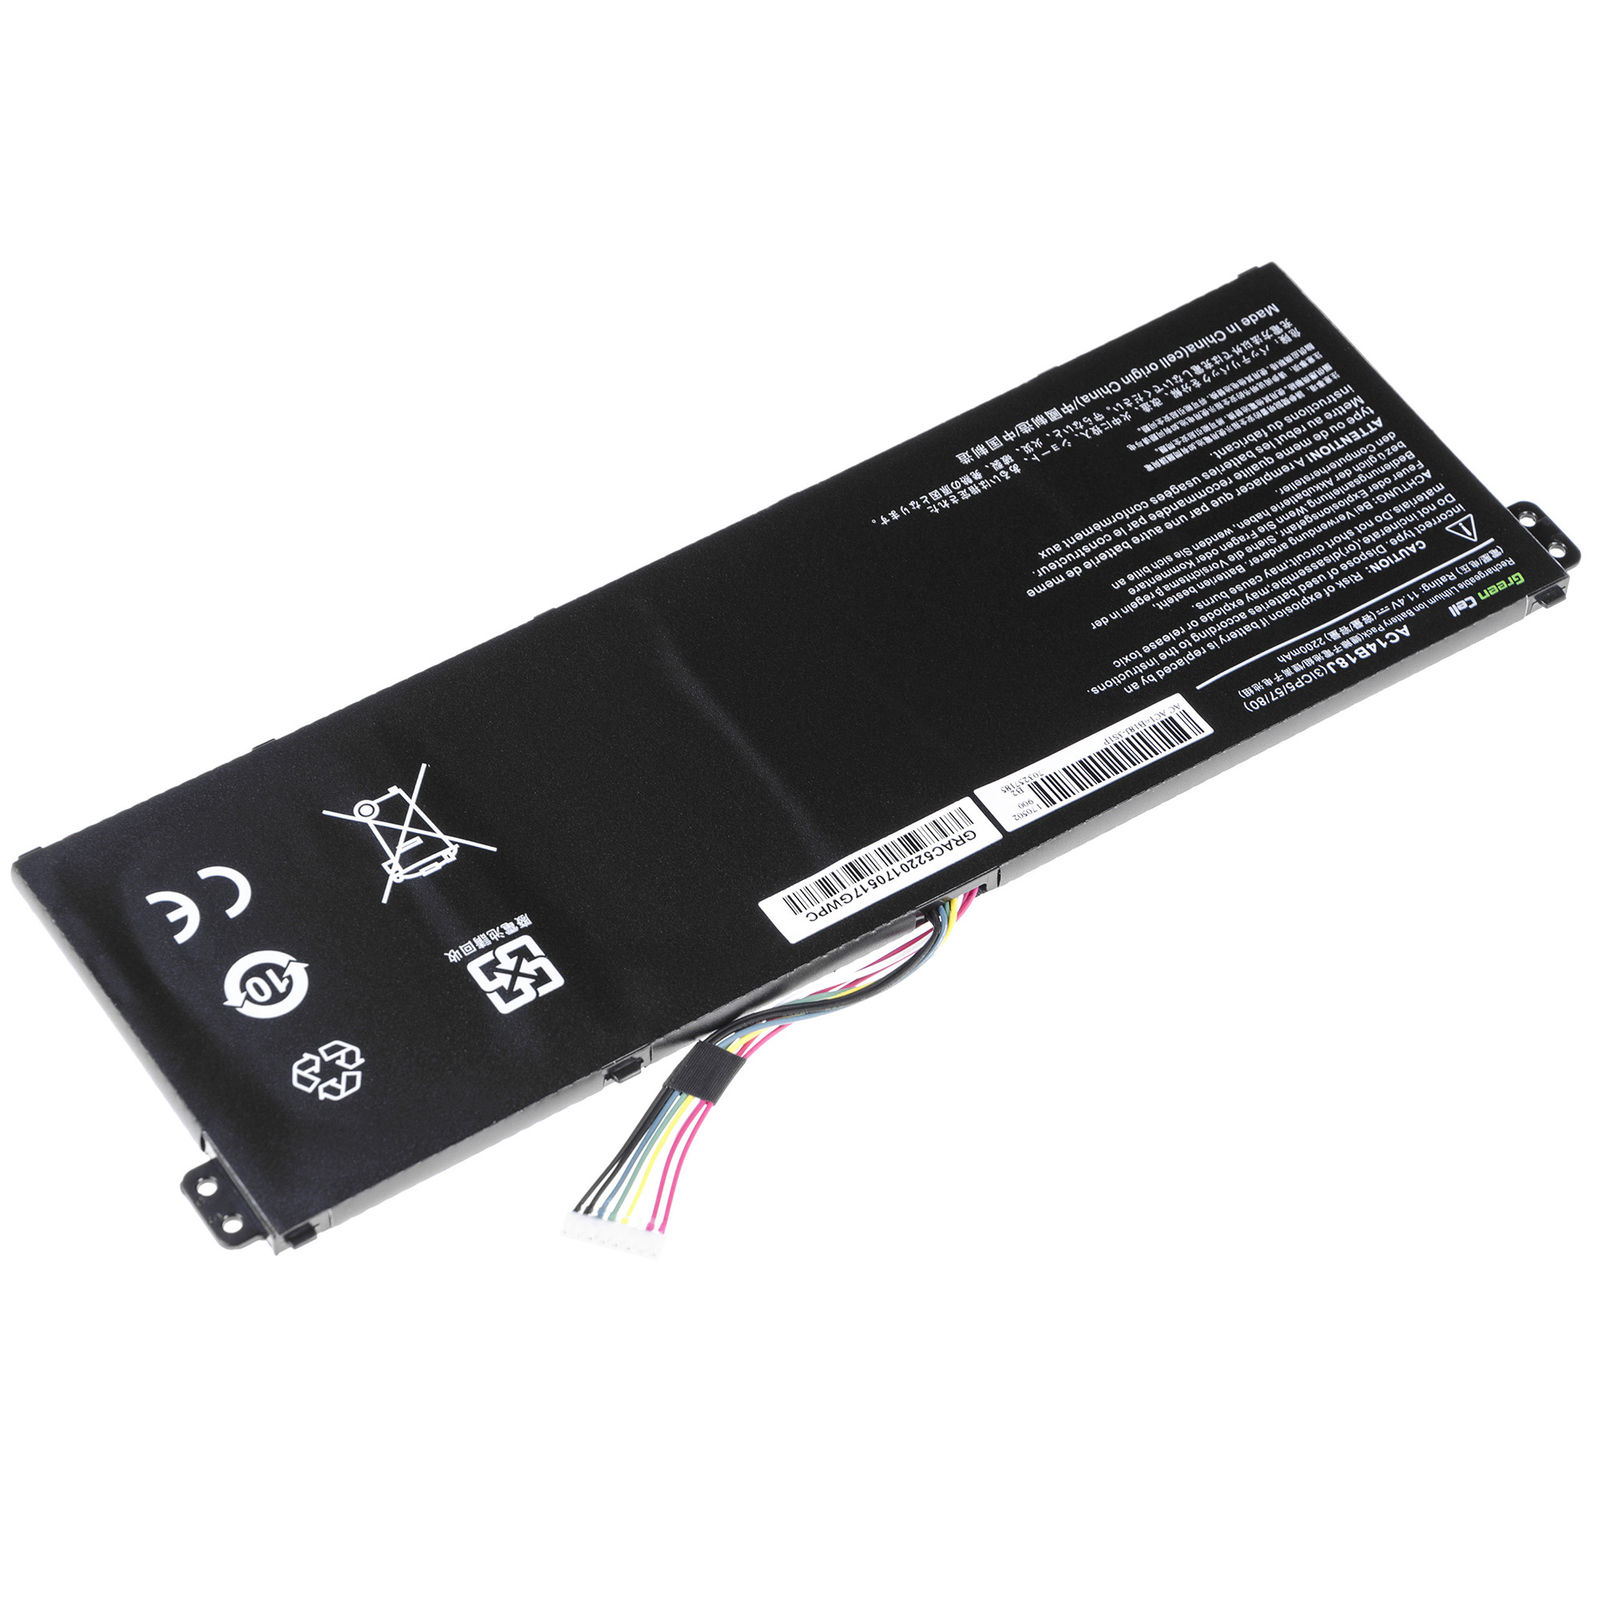 Batería para Acer Extensa 2519-P034 2519-P06C 2519-P0HY 2519-P560(compatible)